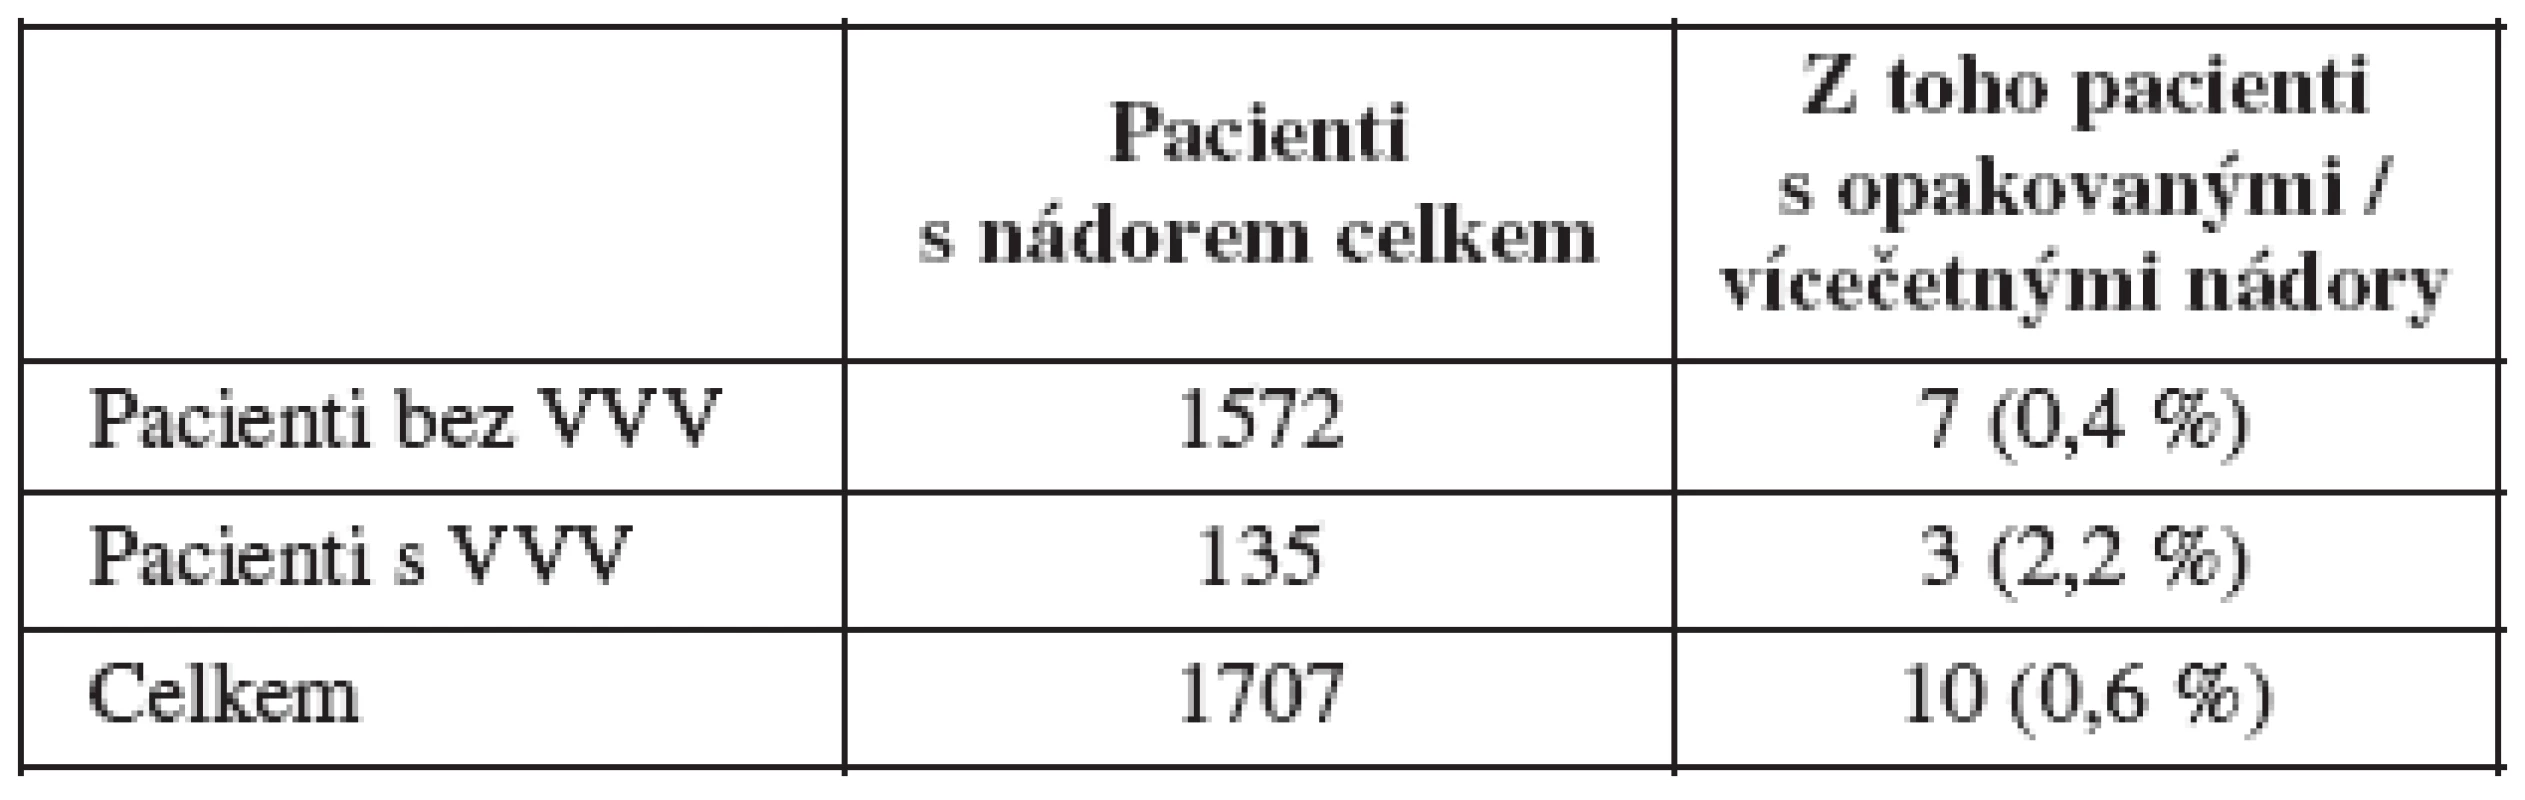 Sekundární / vícečetné malignity u pacientů v souboru, ČR, 1994 - 2005